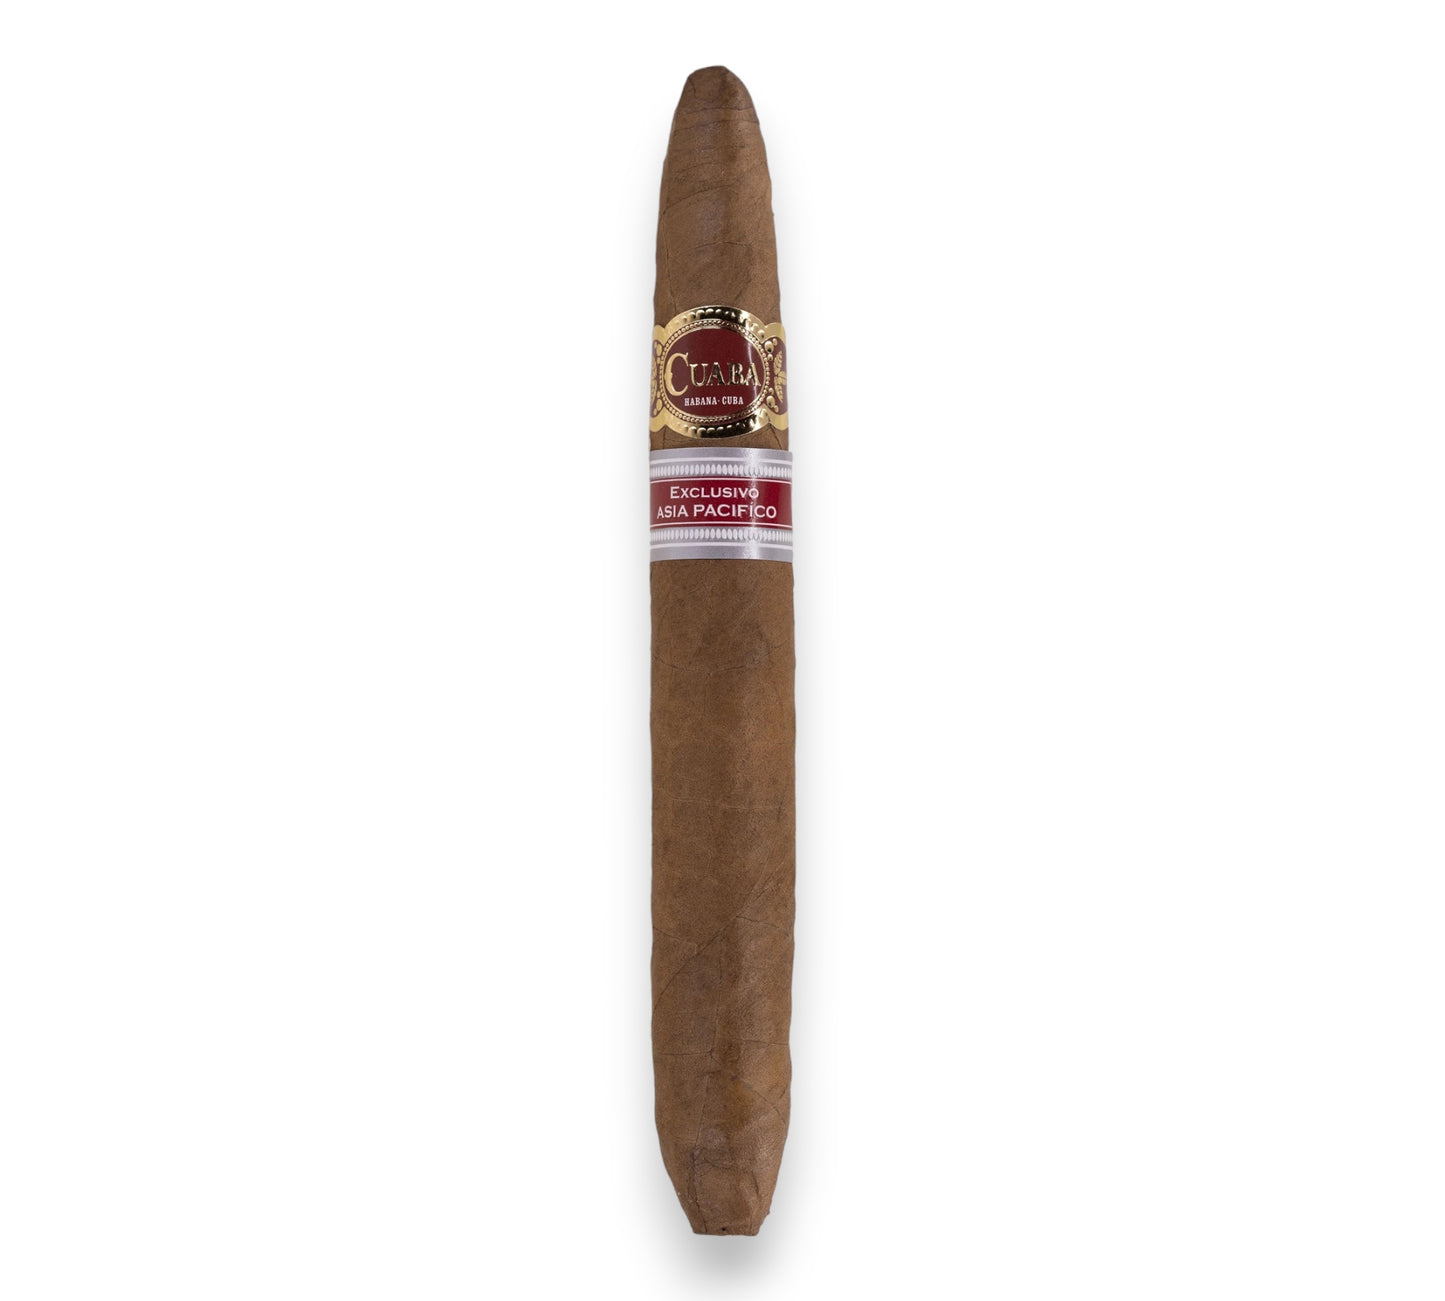 Cuaba Apac Cigar (Ex. Asia Pacifico 2020)